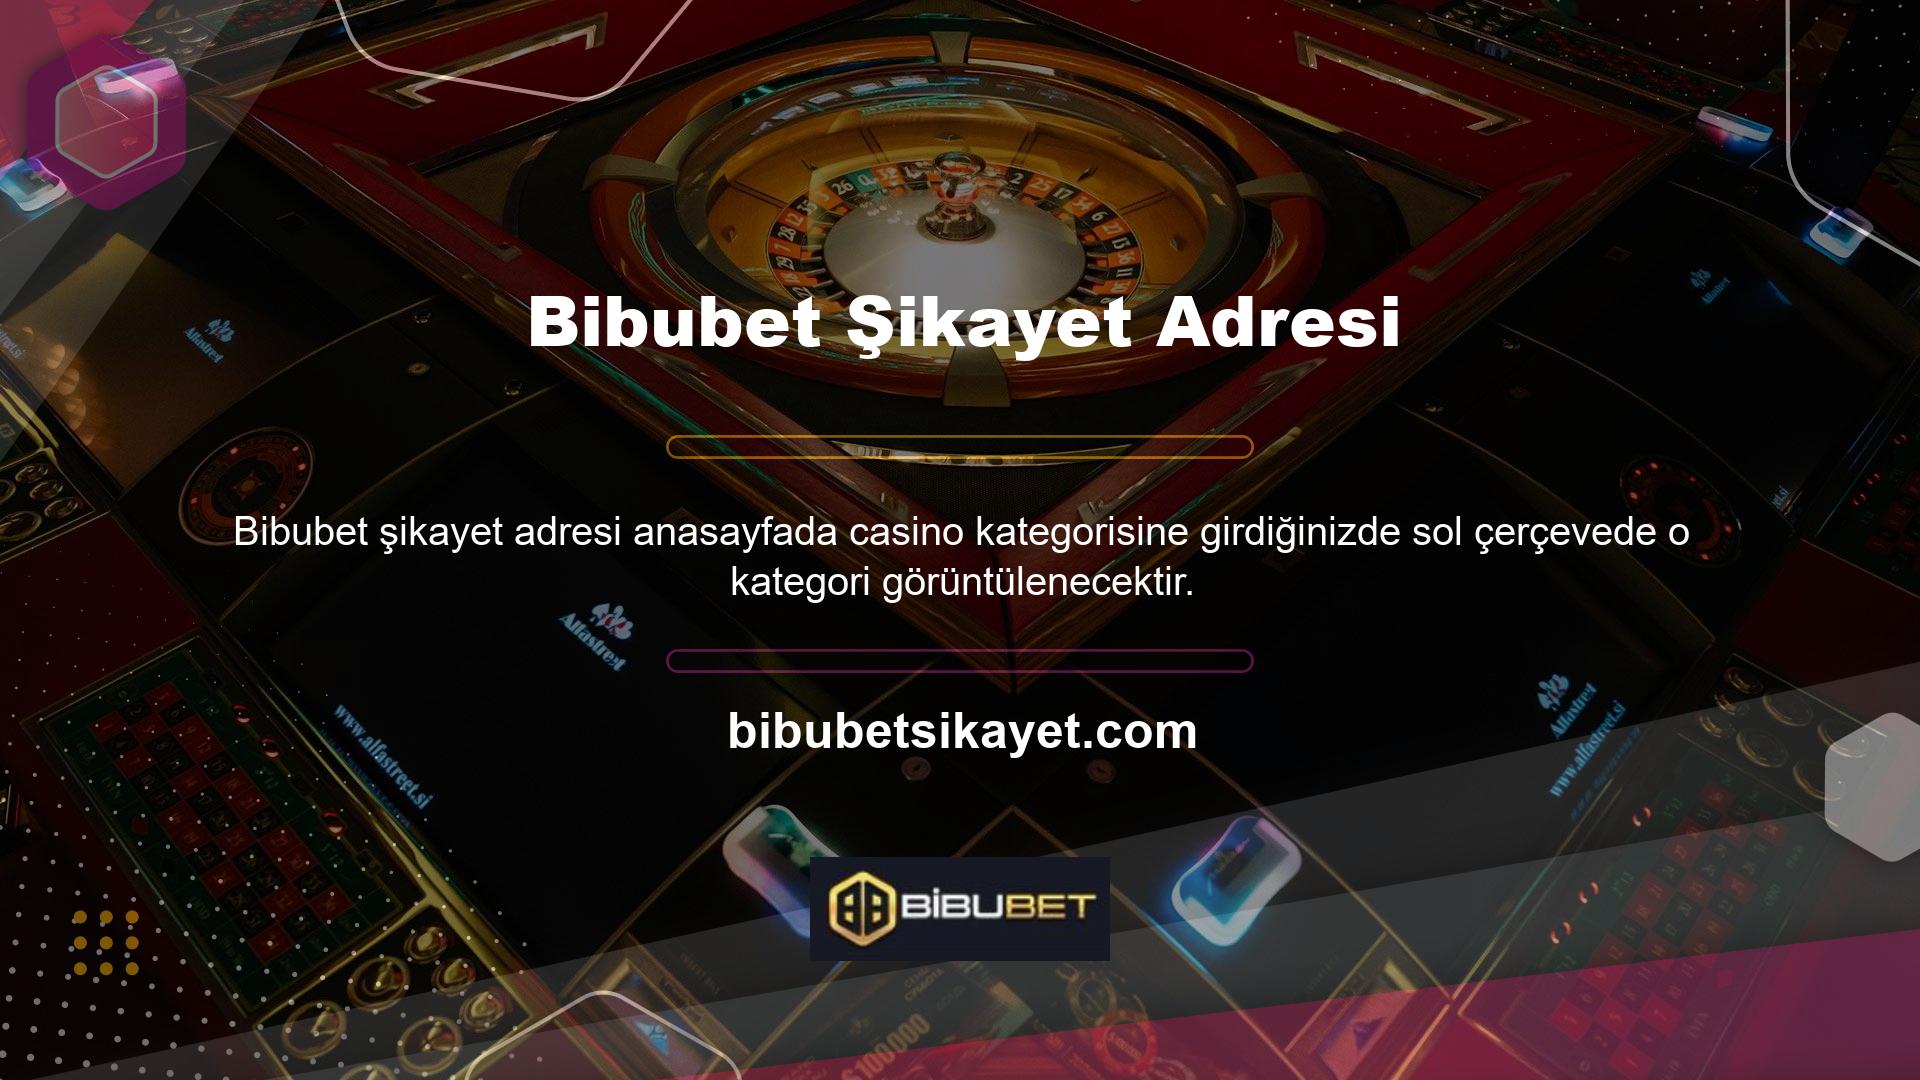 Zincir, geniş oyun yelpazesiyle Bibubet Casino dünyasını daha aktif ve renkli hale getirirken, aynı zamanda spor bahislerinin popülerliğiyle casino dünyasını da canlandırıyor